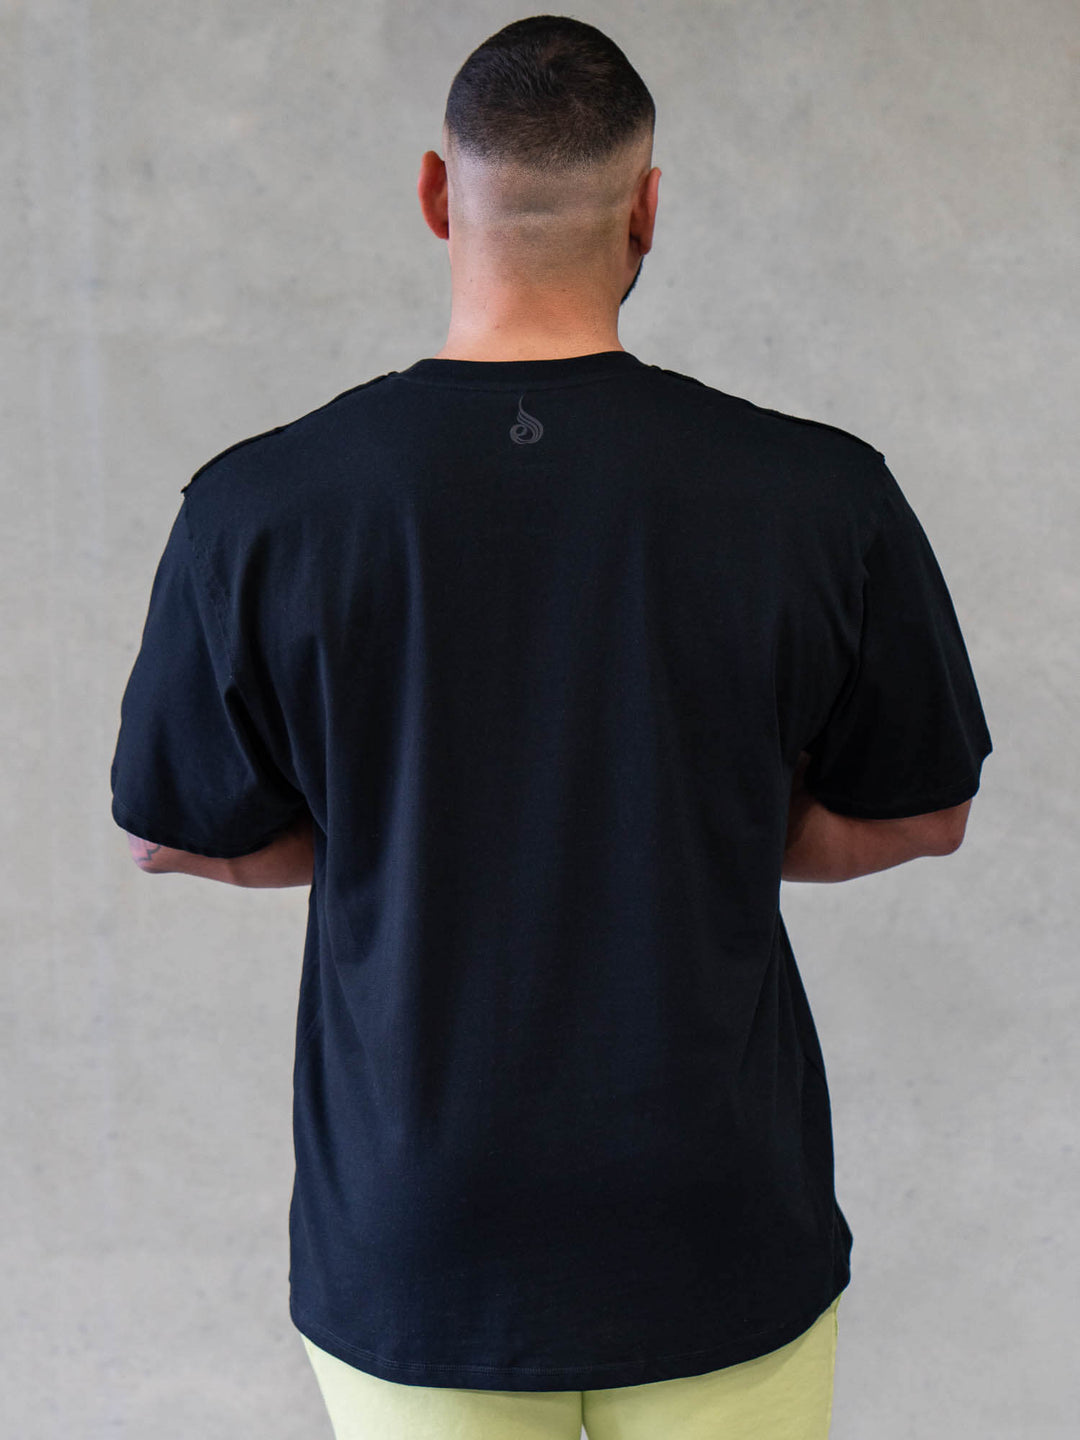 Force Oversized T-Shirt - Black Clothing Ryderwear 